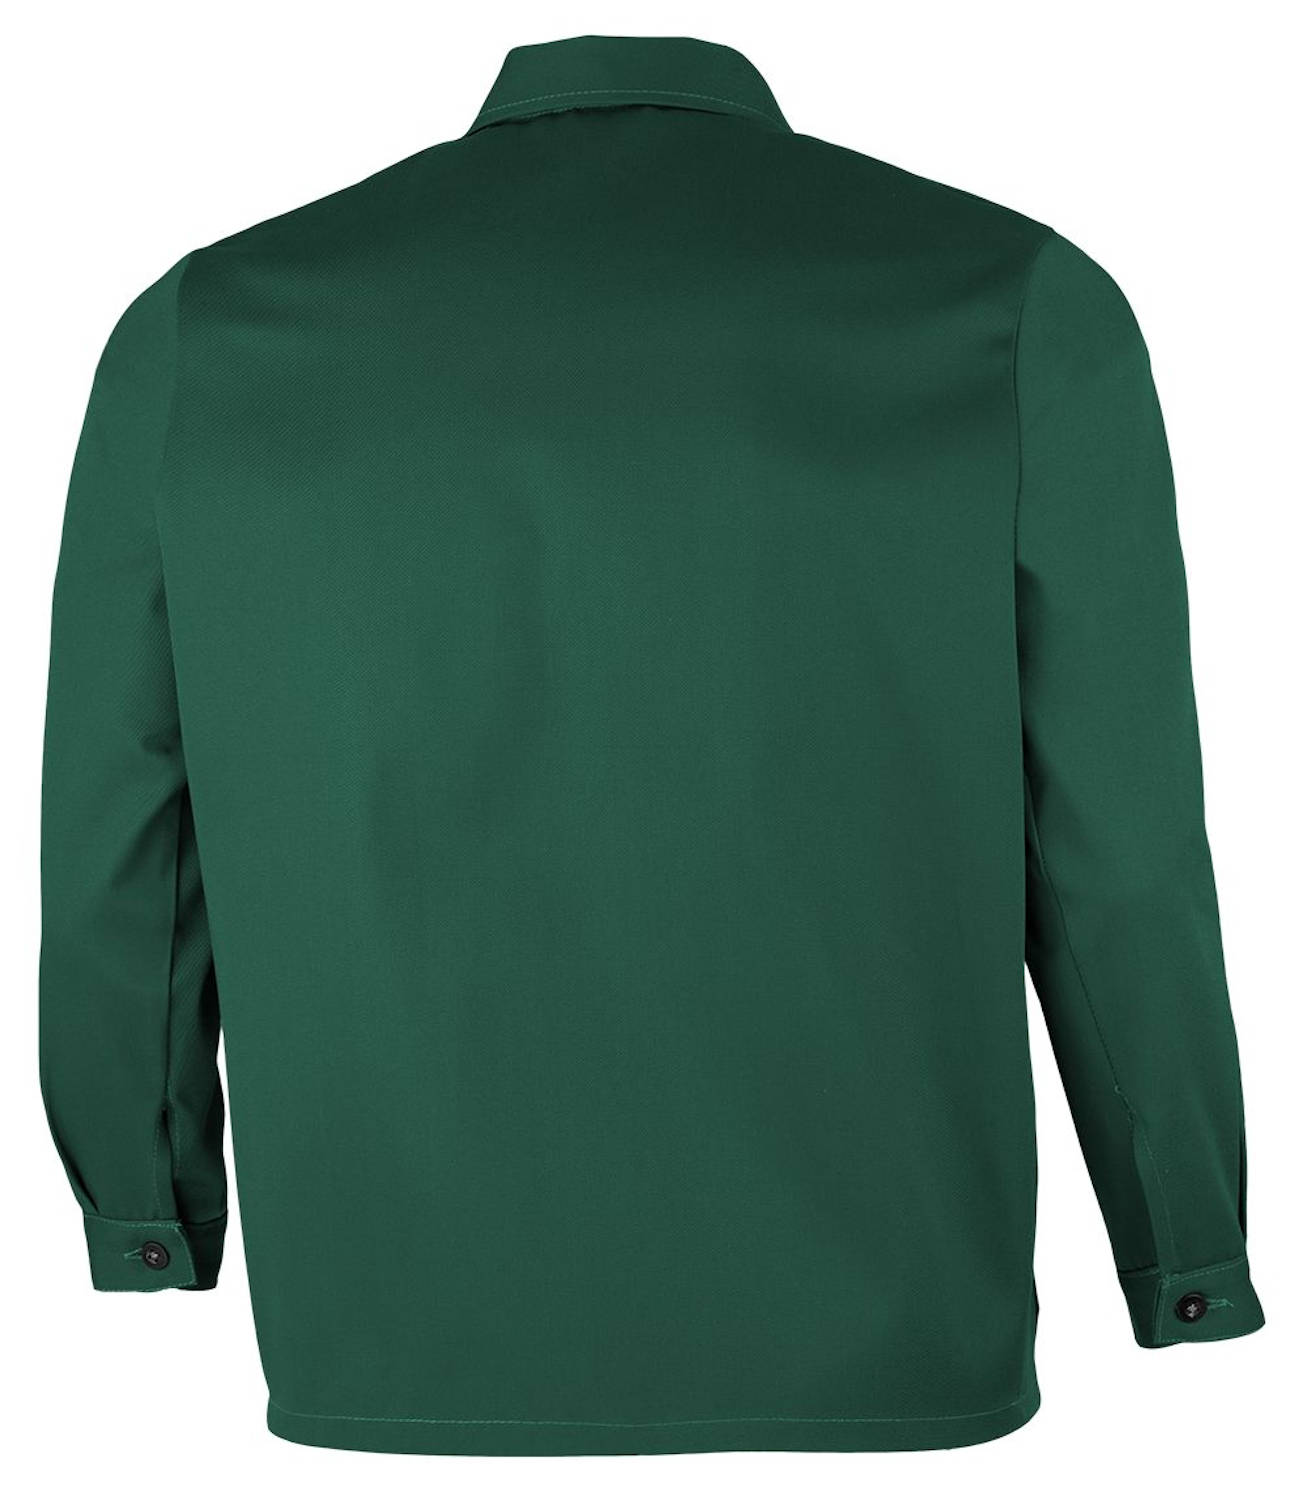 Qualitex Bundjacke "favorit" 100% Baumwolle Arbeitsjacke Jacke NEU in 5 Farben 